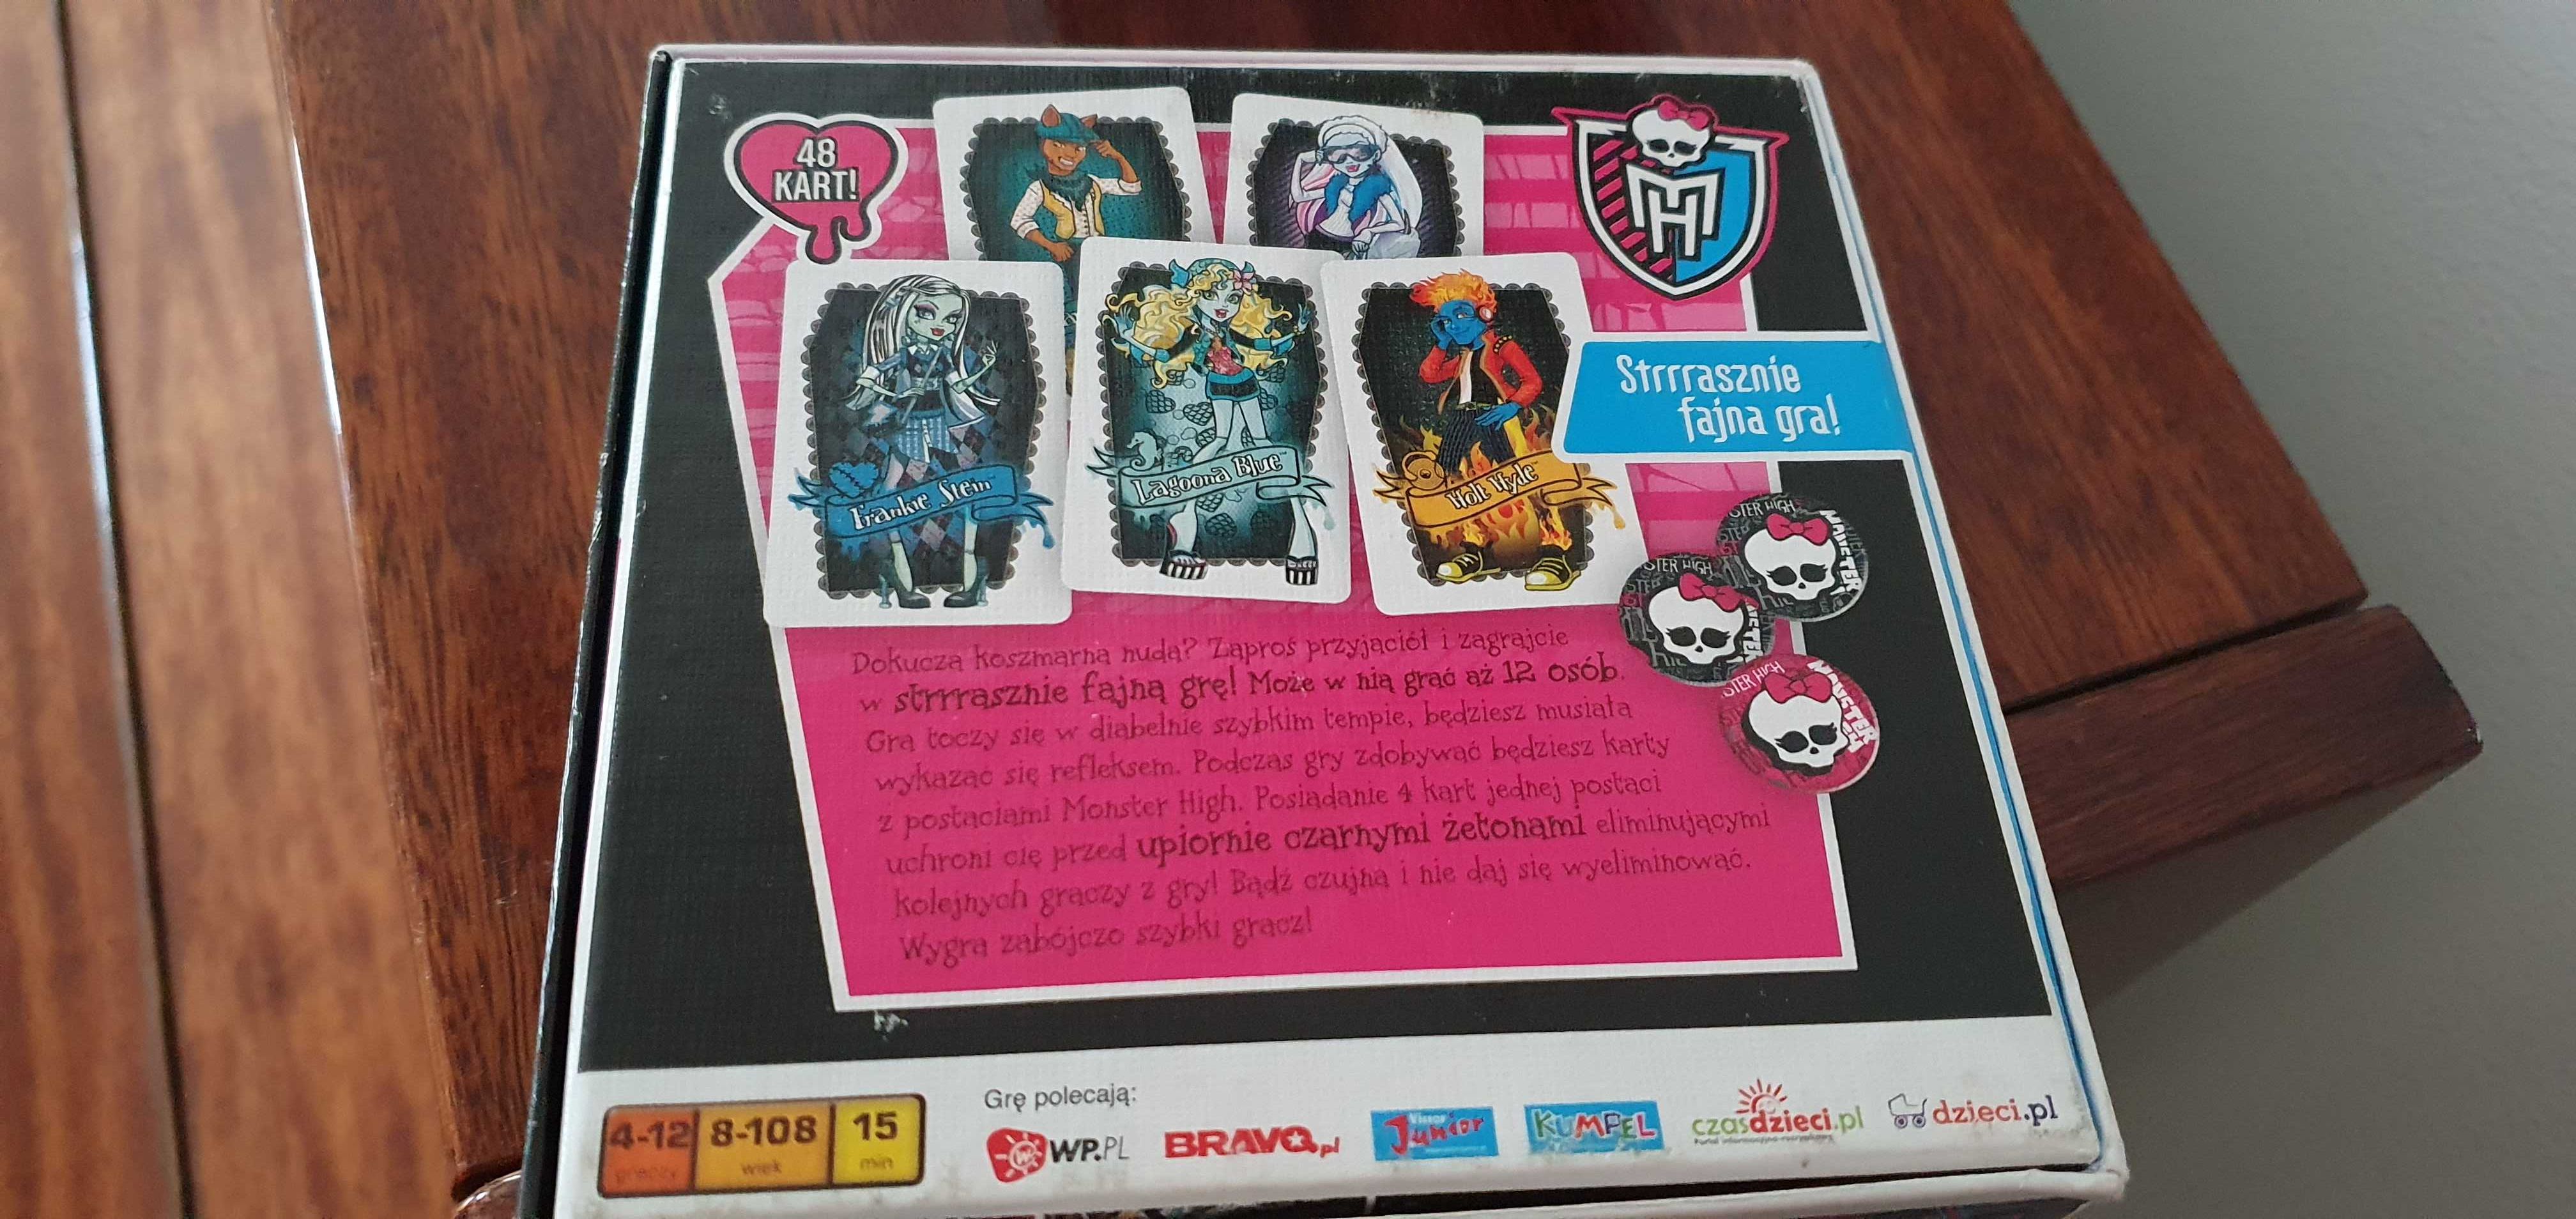 Strrrasznie fajna gra Monster High